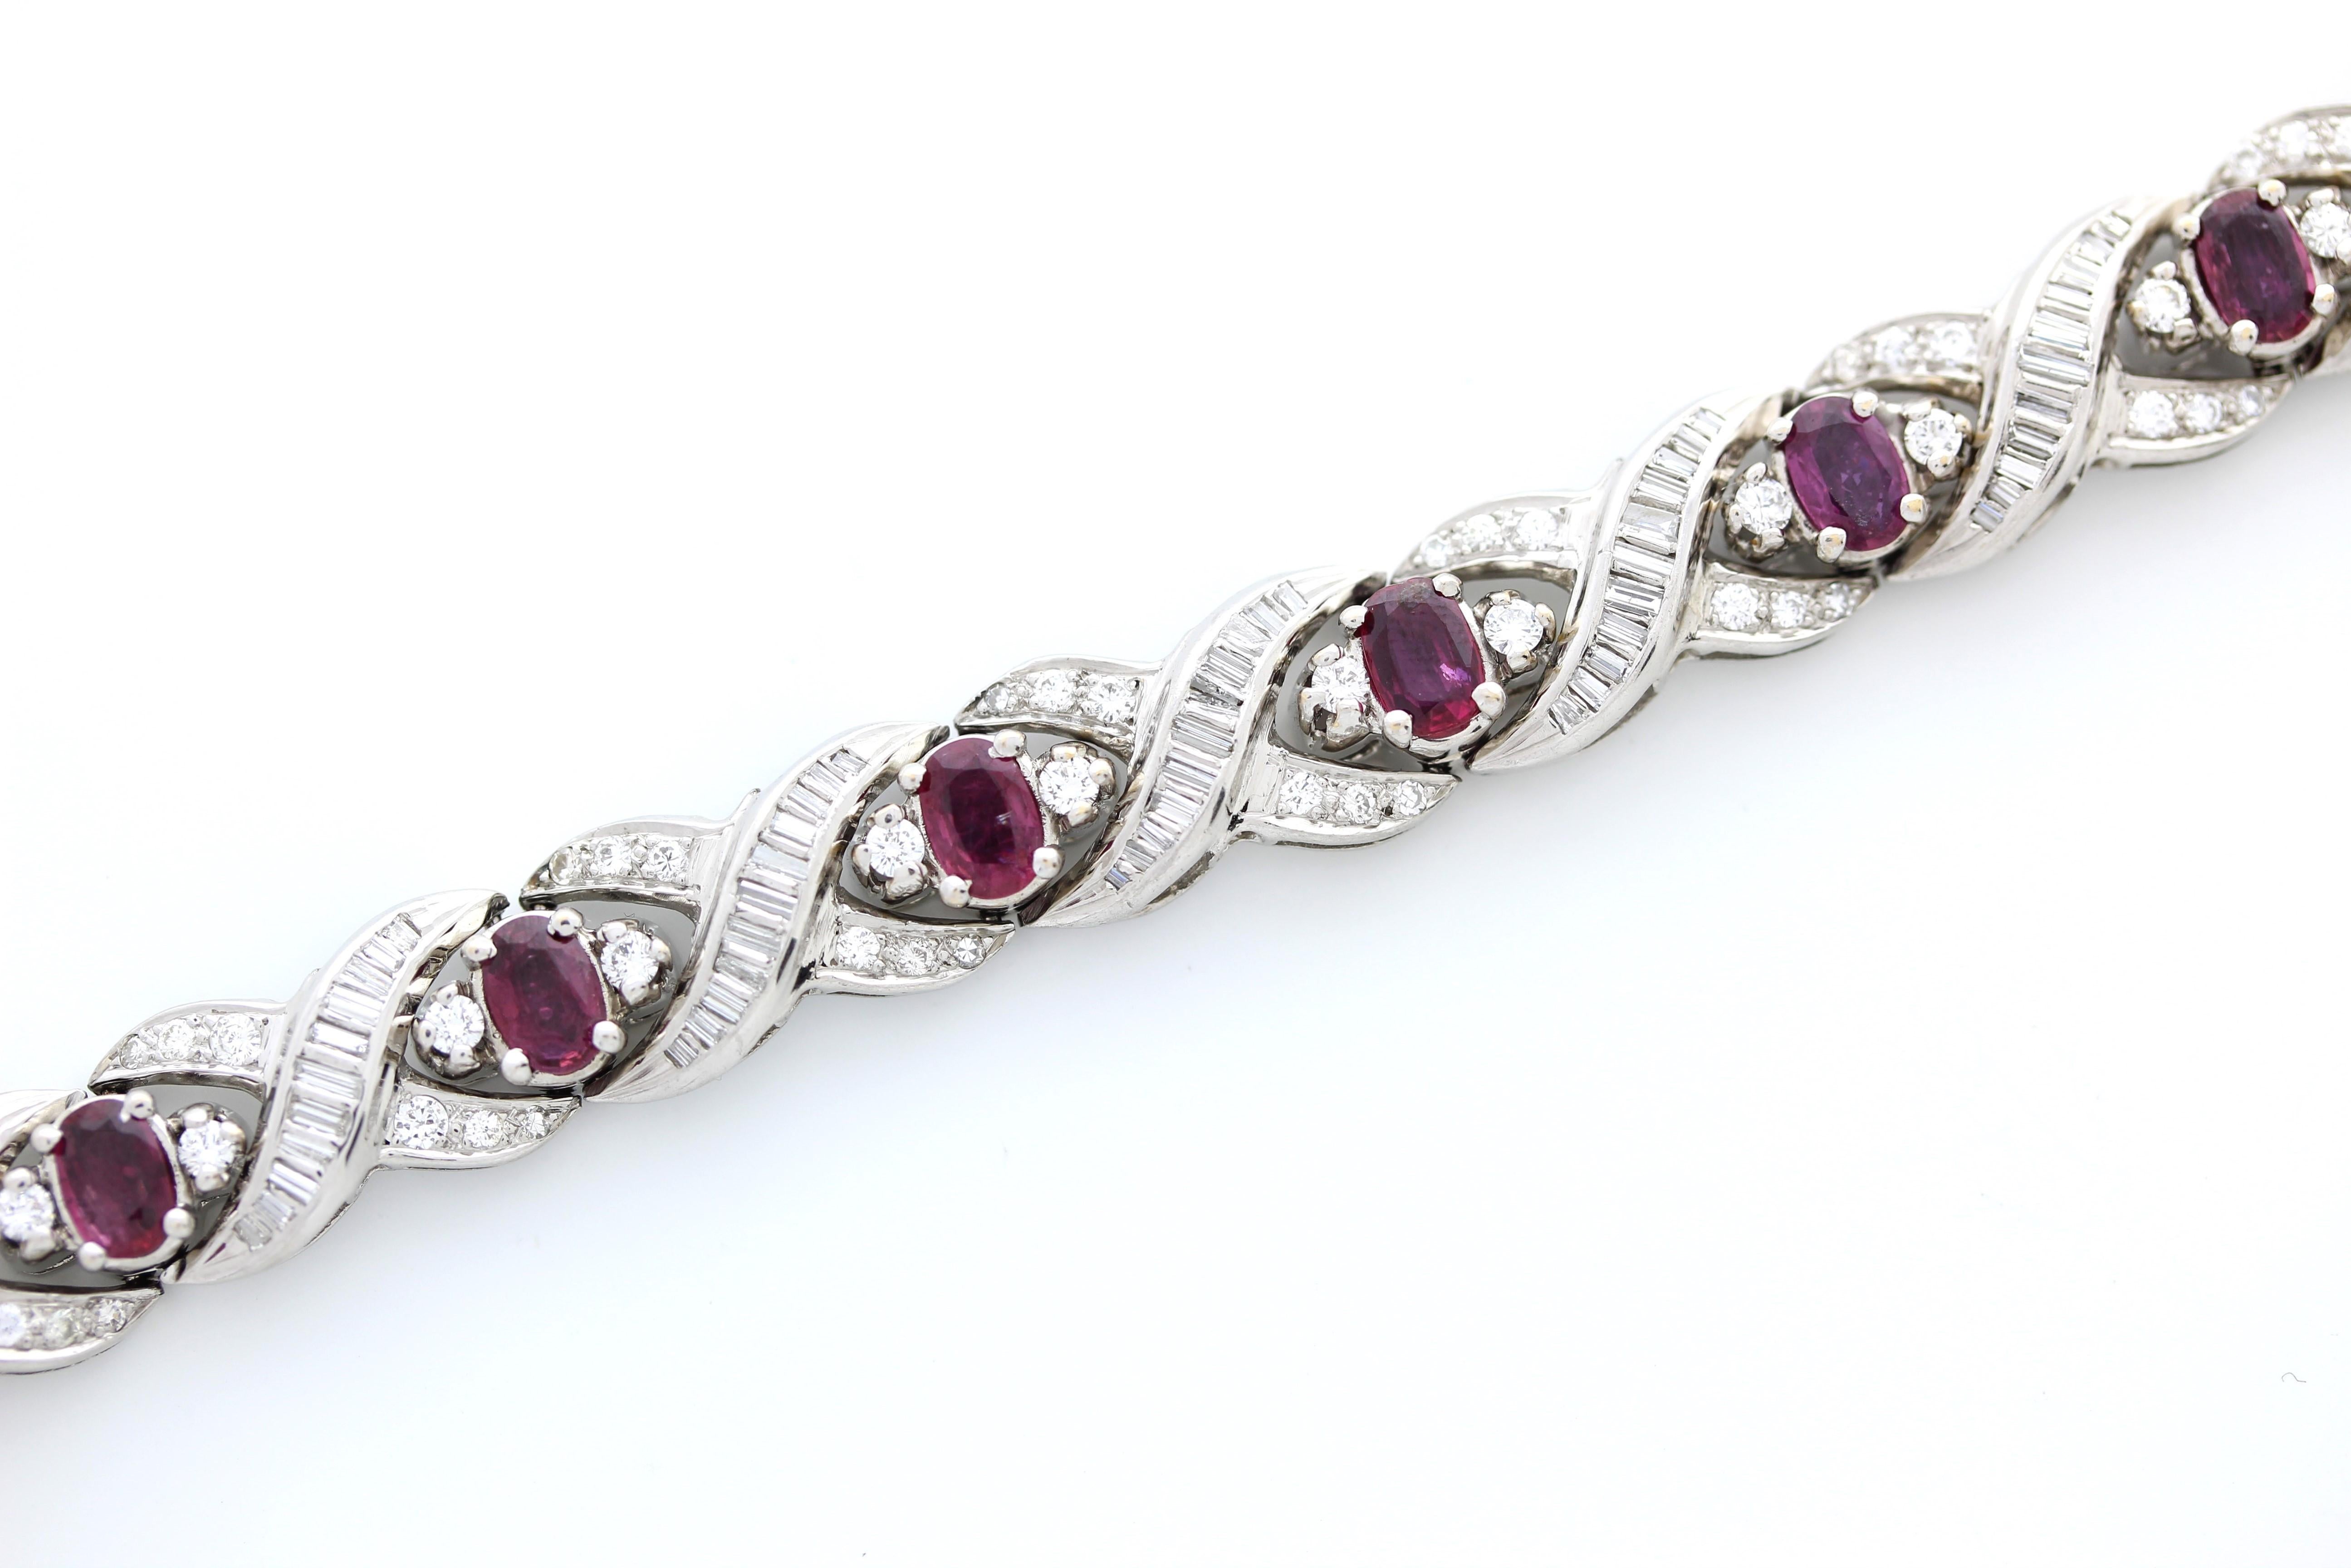 Bracelets avec une combinaison de rubis, de platine, de diamants ovales et de pierres rondes. Les bijoux en rubis et en diamant peuvent être tout à fait exquis, et le choix du métal et de la forme des pierres peut grandement influencer le design